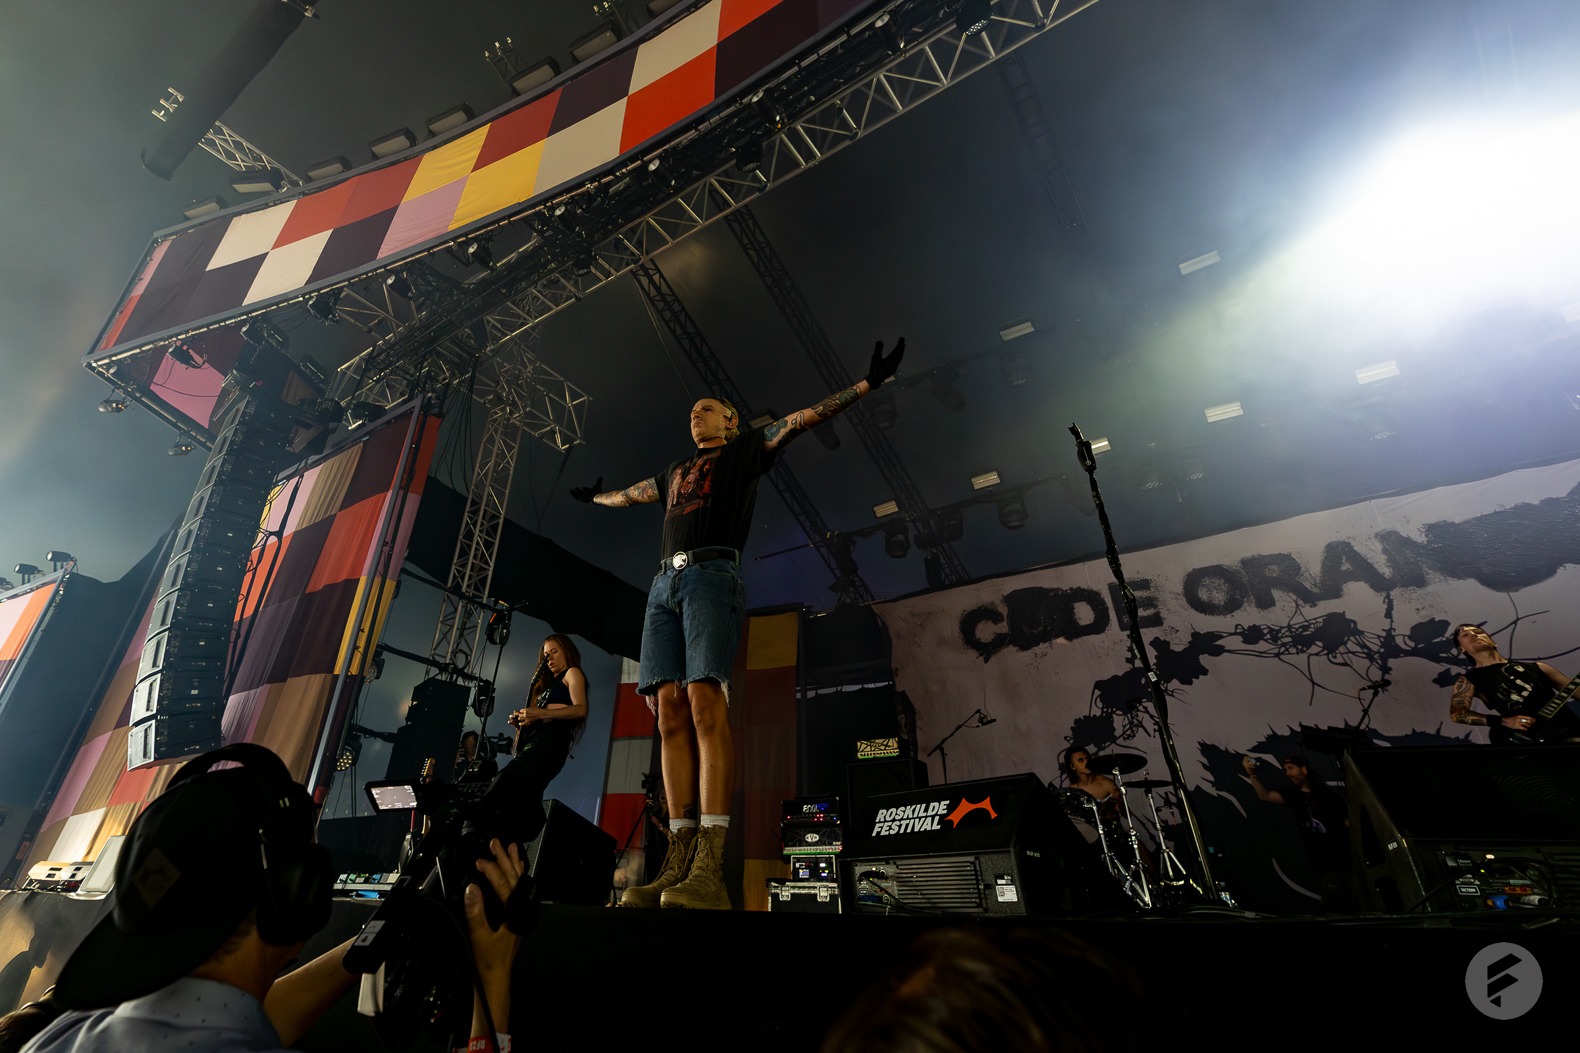 Code Orange · Roskilde Festival 2023